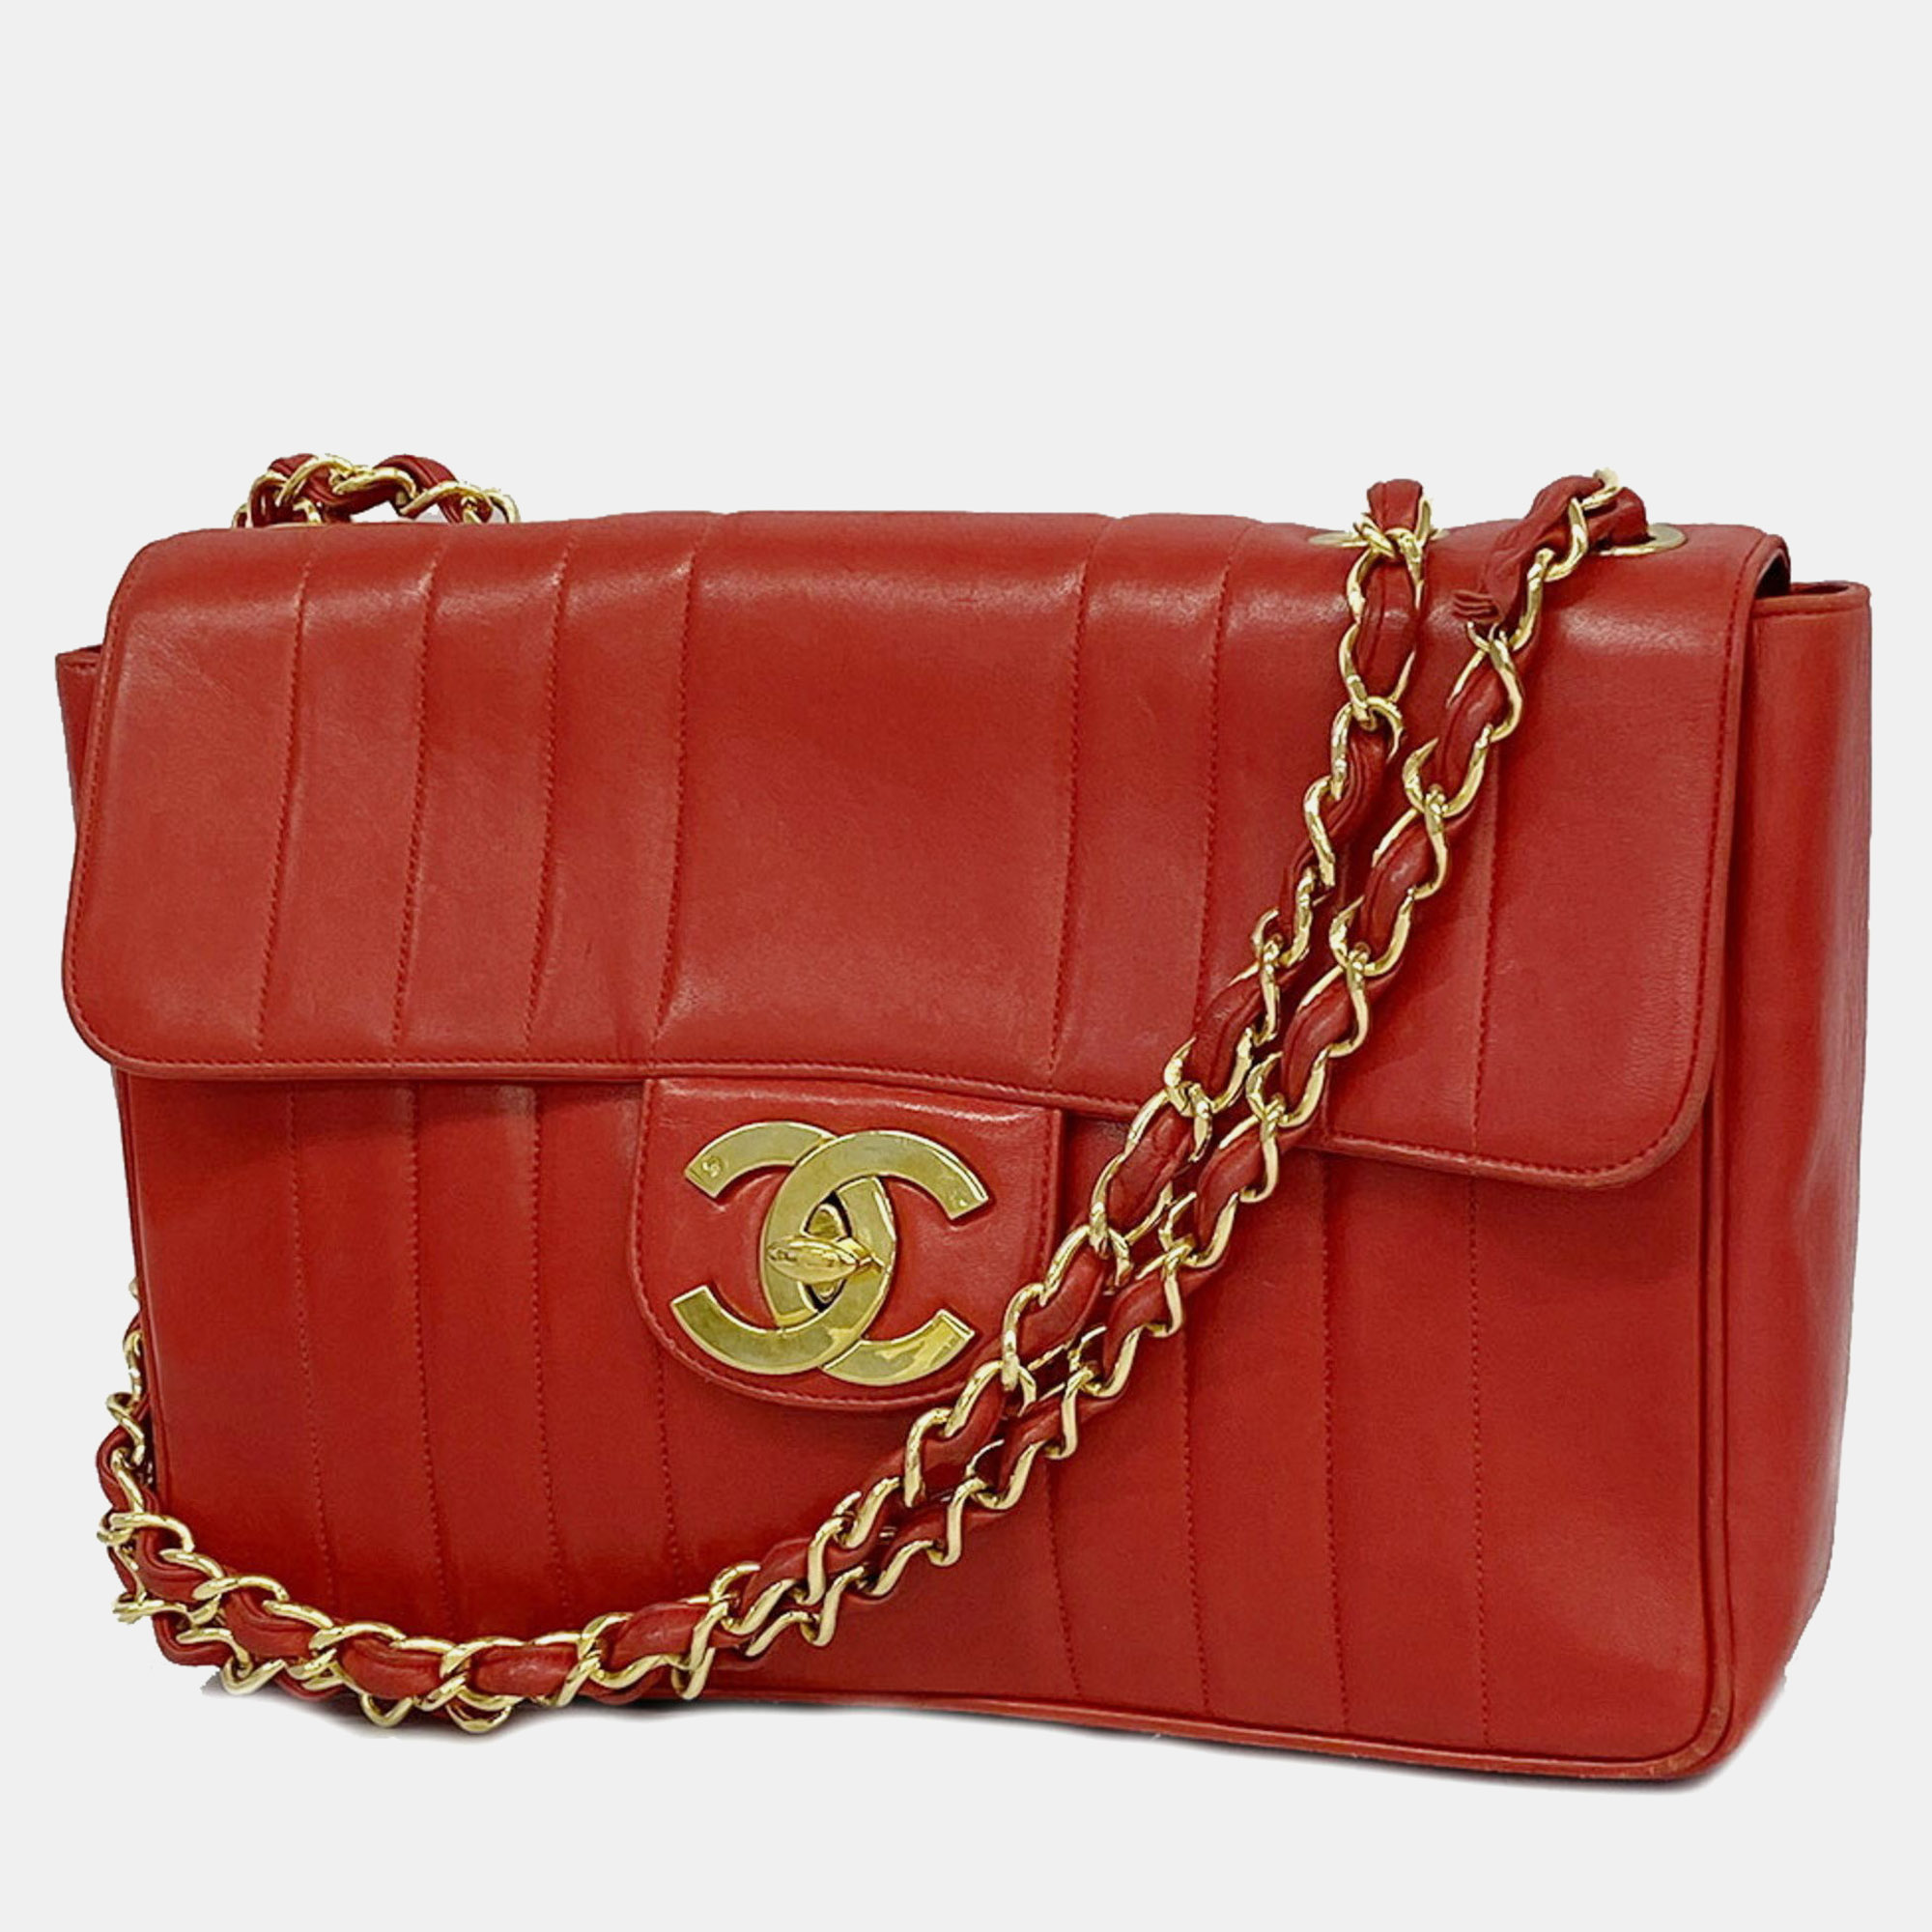 Chanel red leather mademoiselle shoulder bag